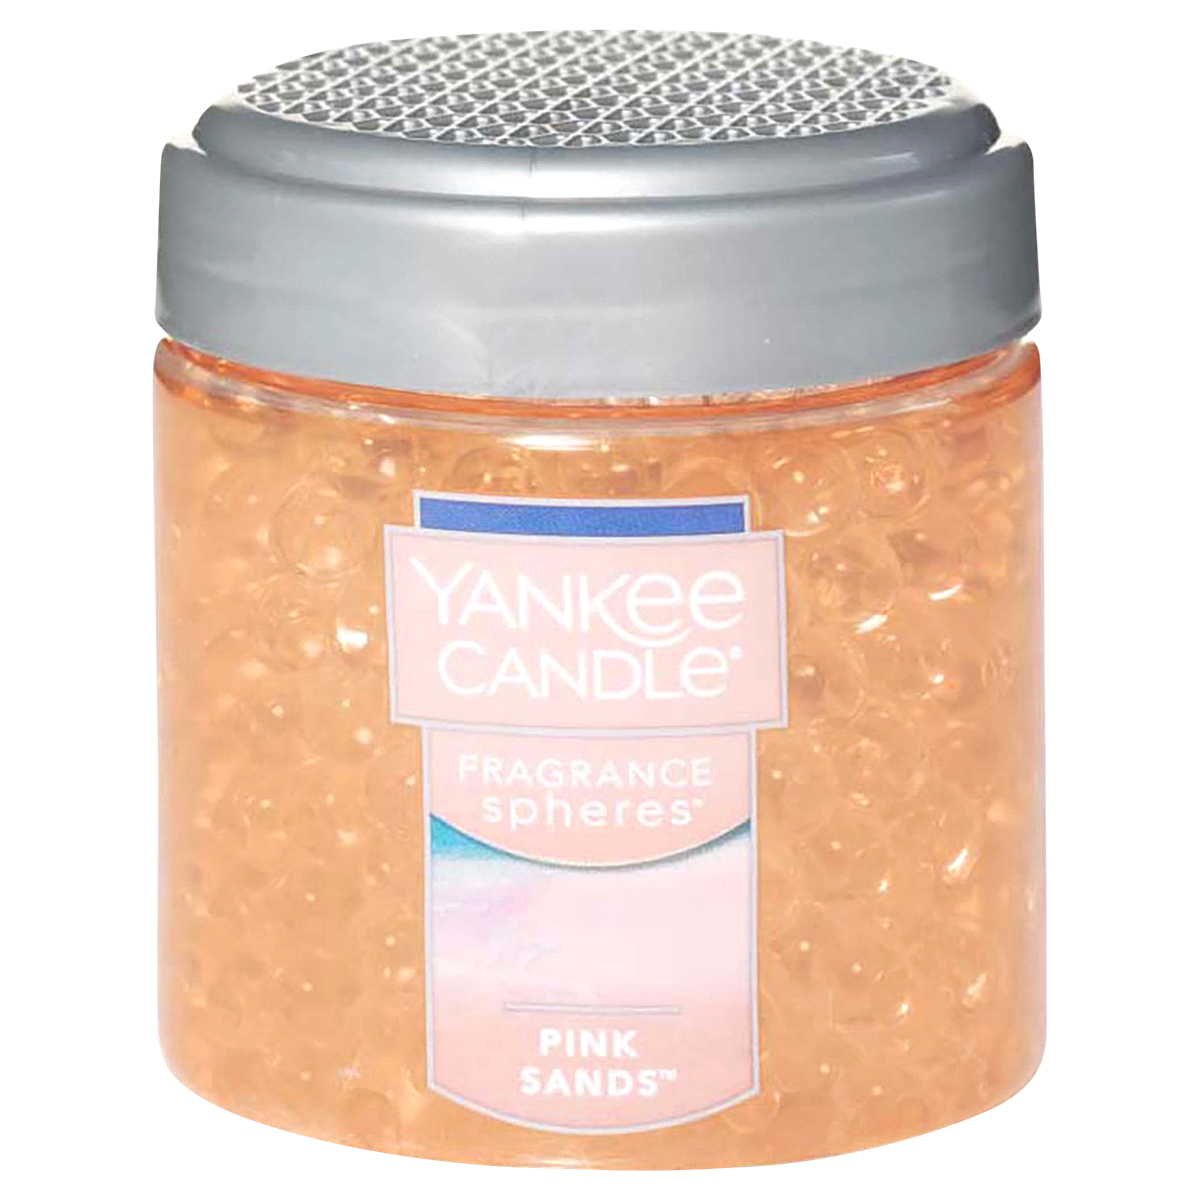 slide 1 of 1, Yankee Candle Fragrance Spheres Pink Sands - Pink, 6 oz